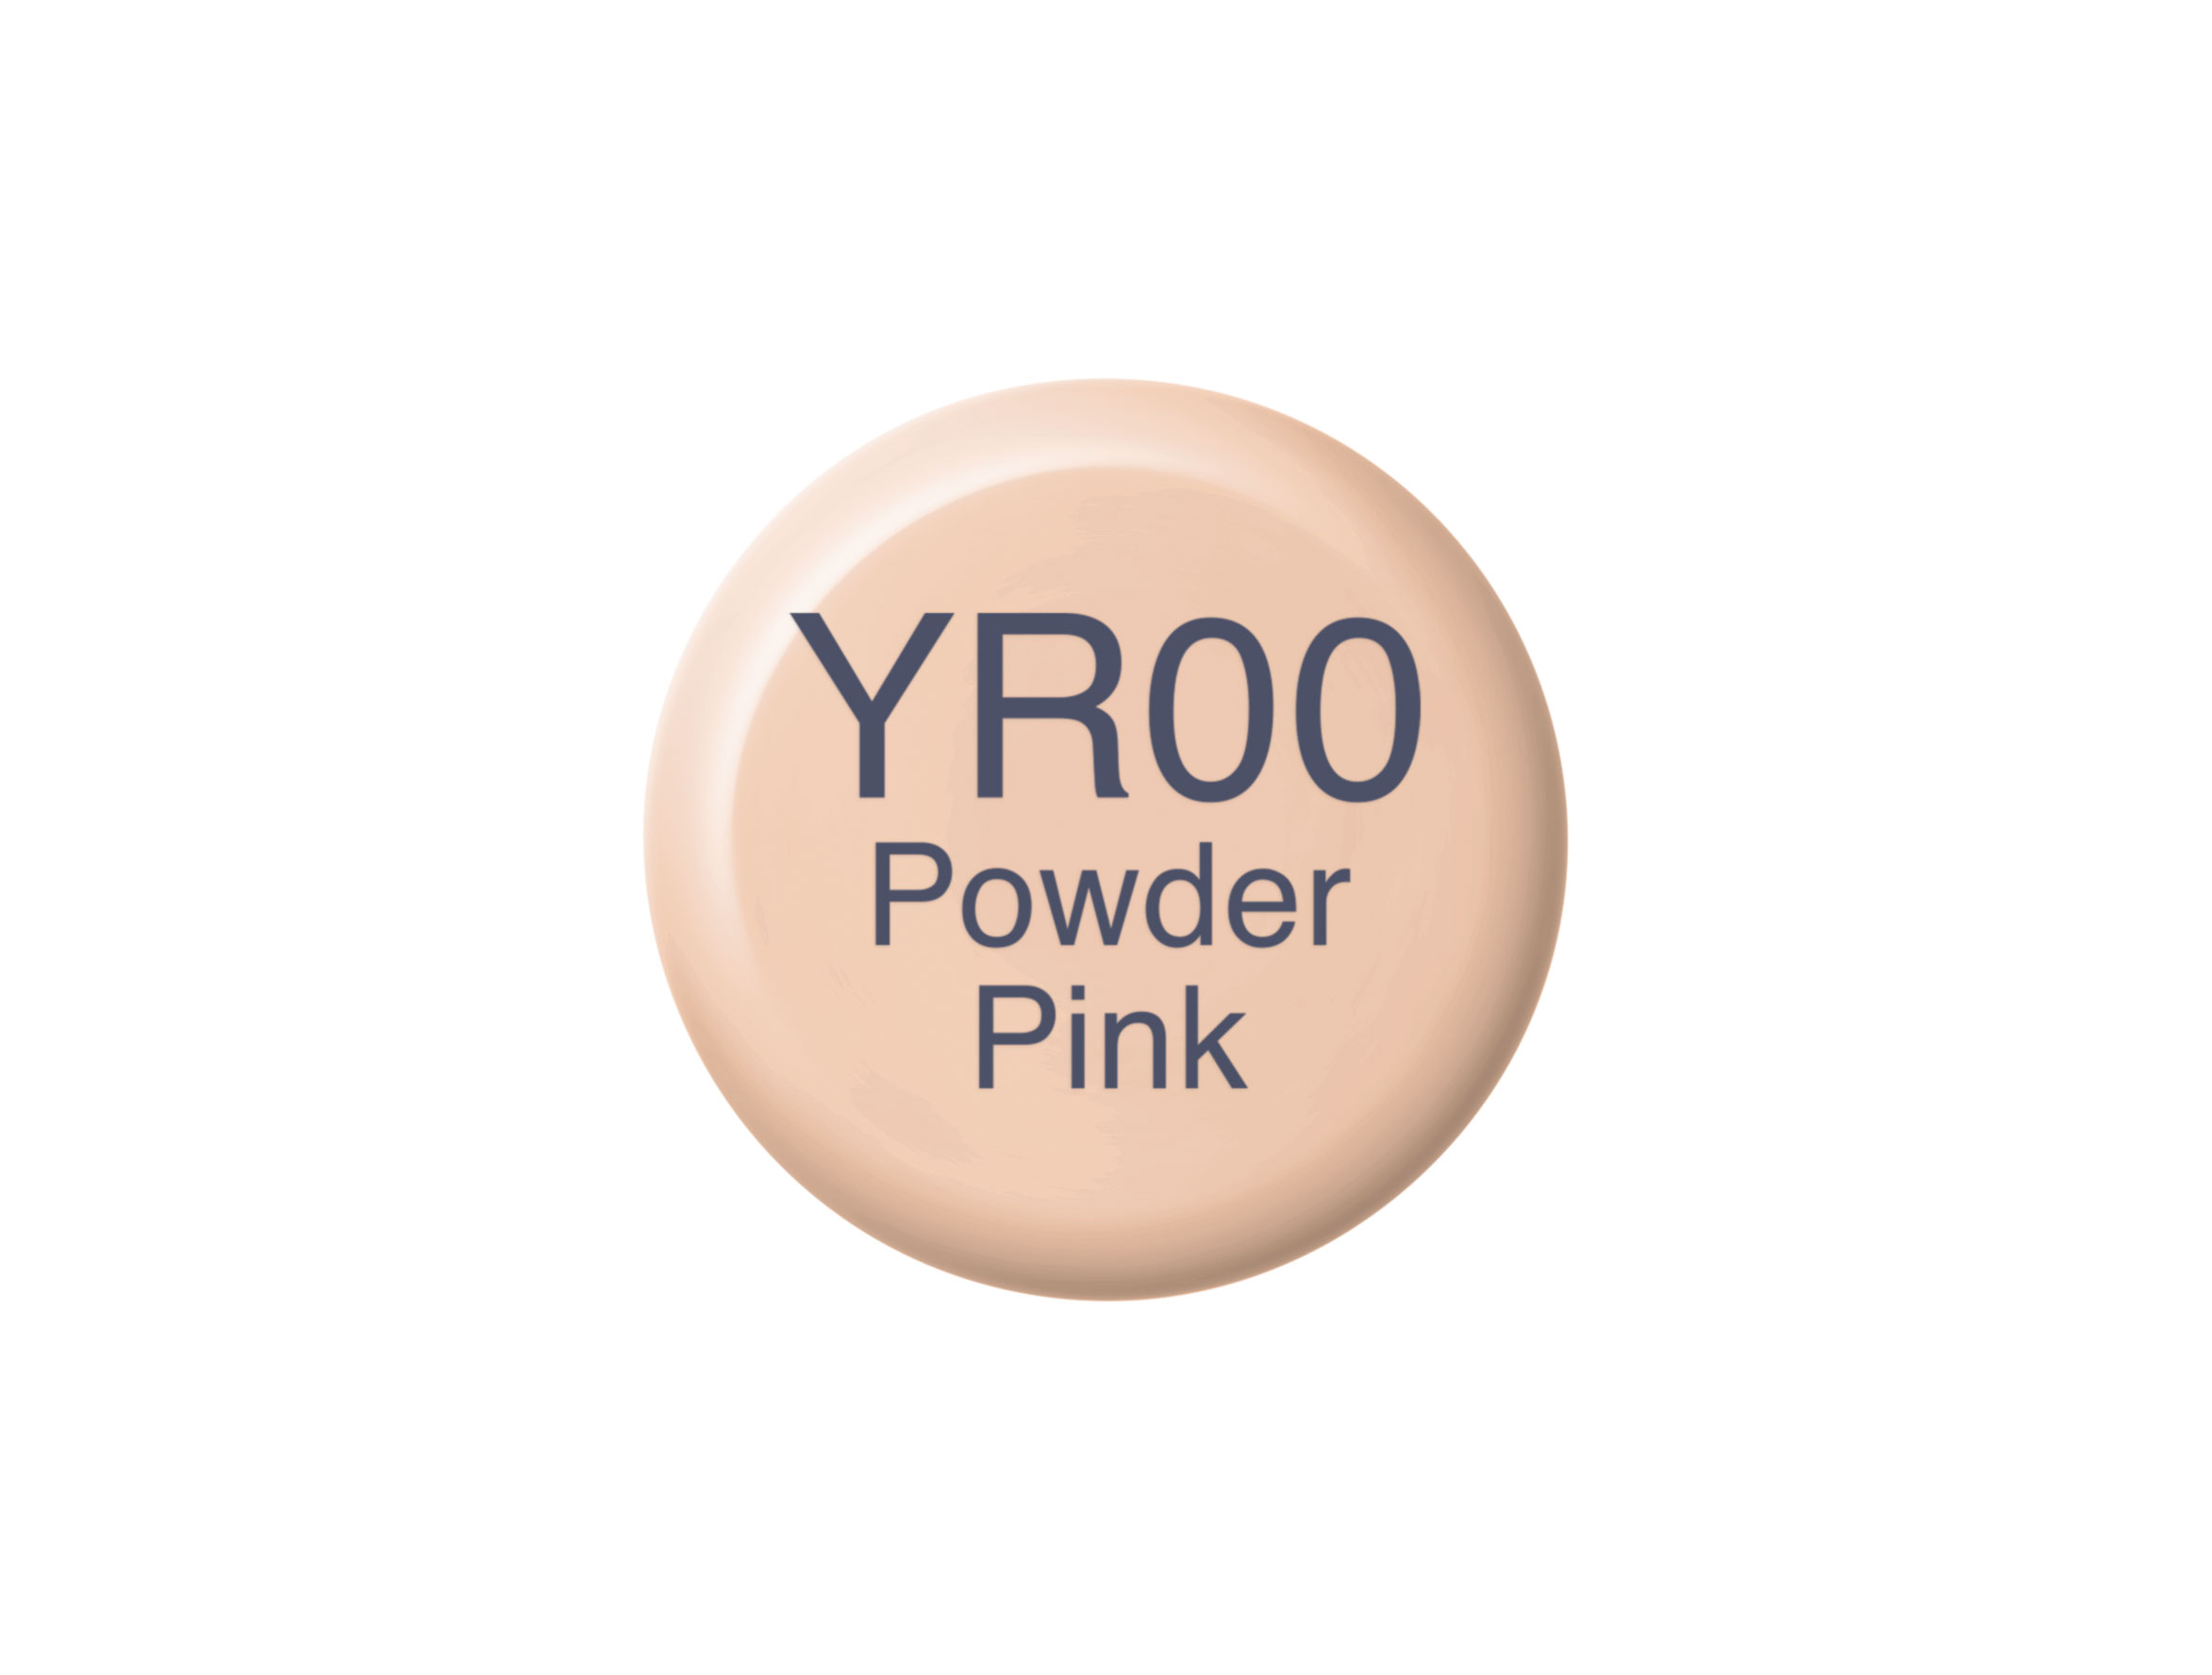 Copic Ink YR00 Powder Pink